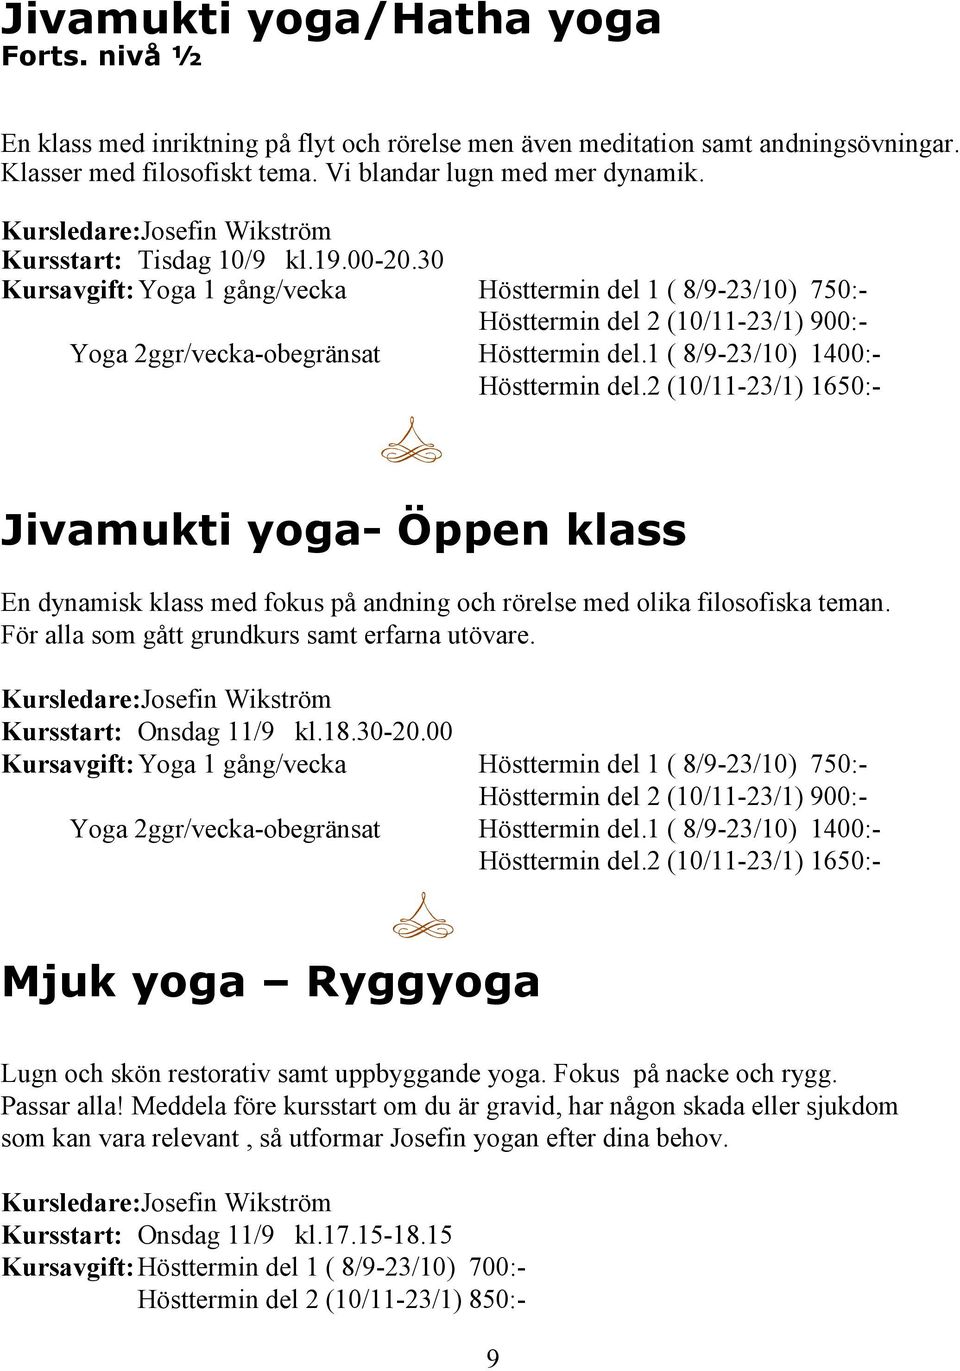 30 Kursavgift: Yoga 1 gång/vecka Hösttermin del 1 ( 8/9-23/10) 750:- Hösttermin del 2 (10/11-23/1) 900:- Yoga 2ggr/vecka-obegränsat Hösttermin del.1 ( 8/9-23/10) 1400:- Hösttermin del.